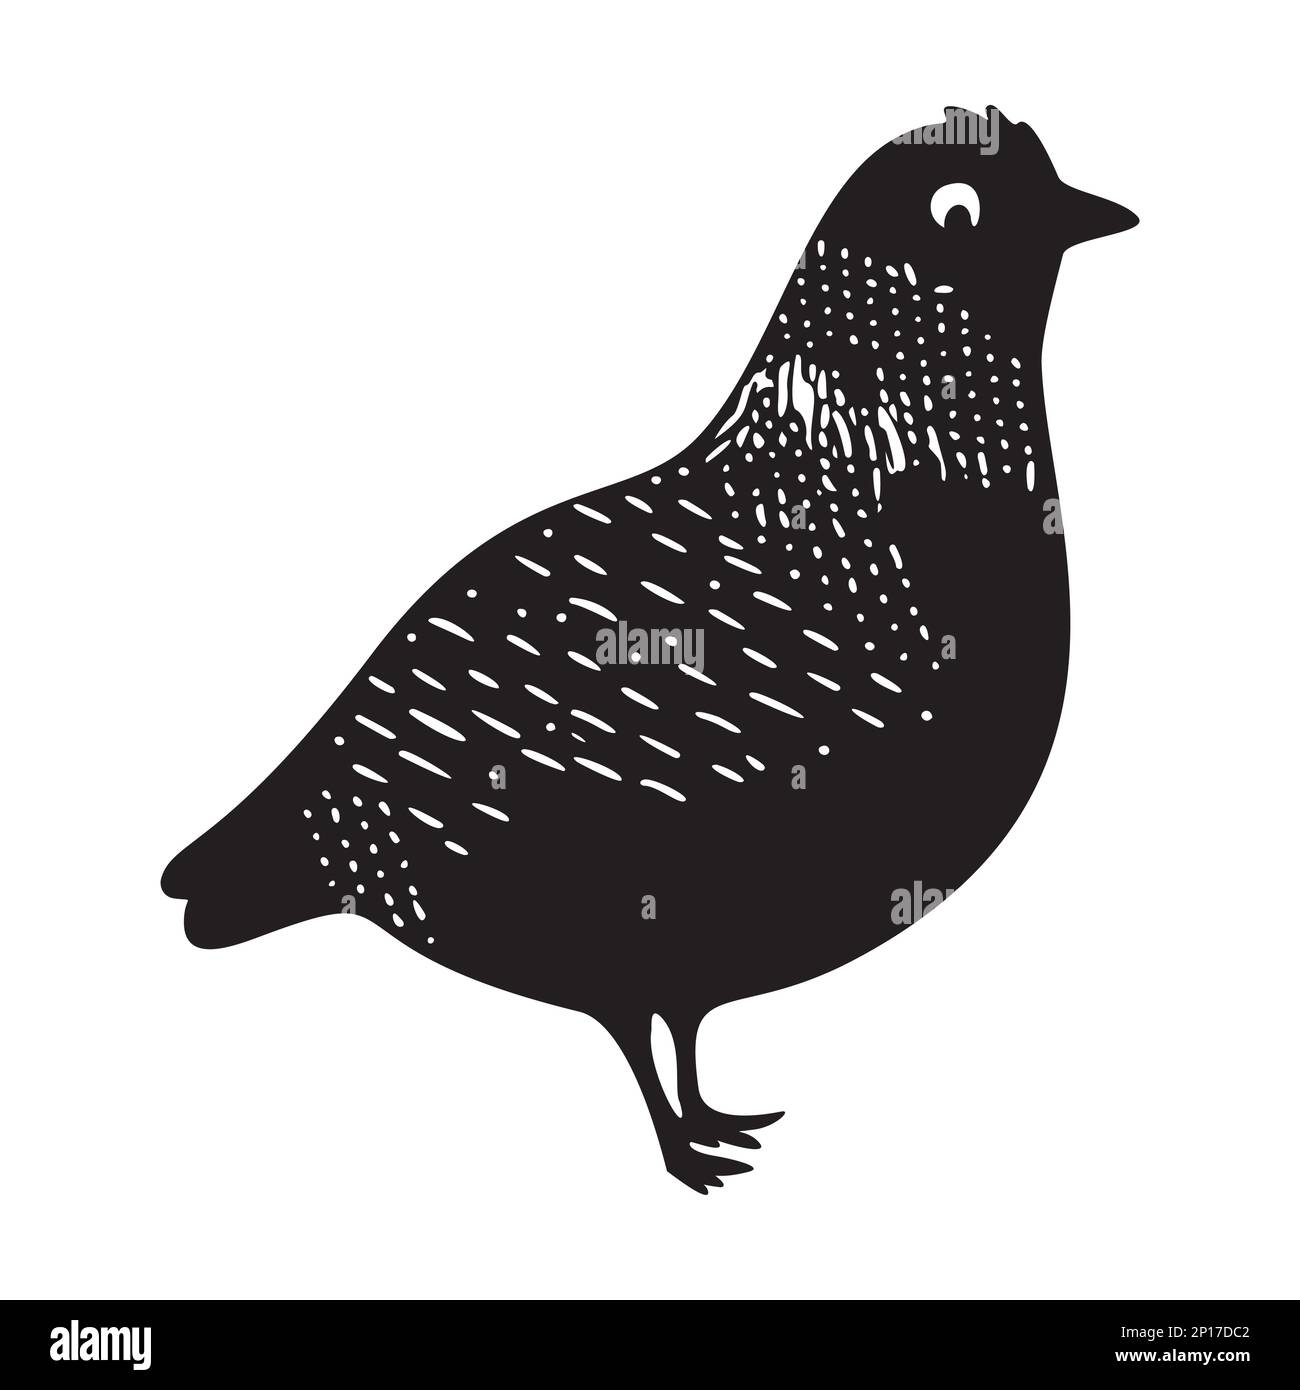 Cute bird vector icon. Low brow wildlife motif in scnadi style.  Stock Vector